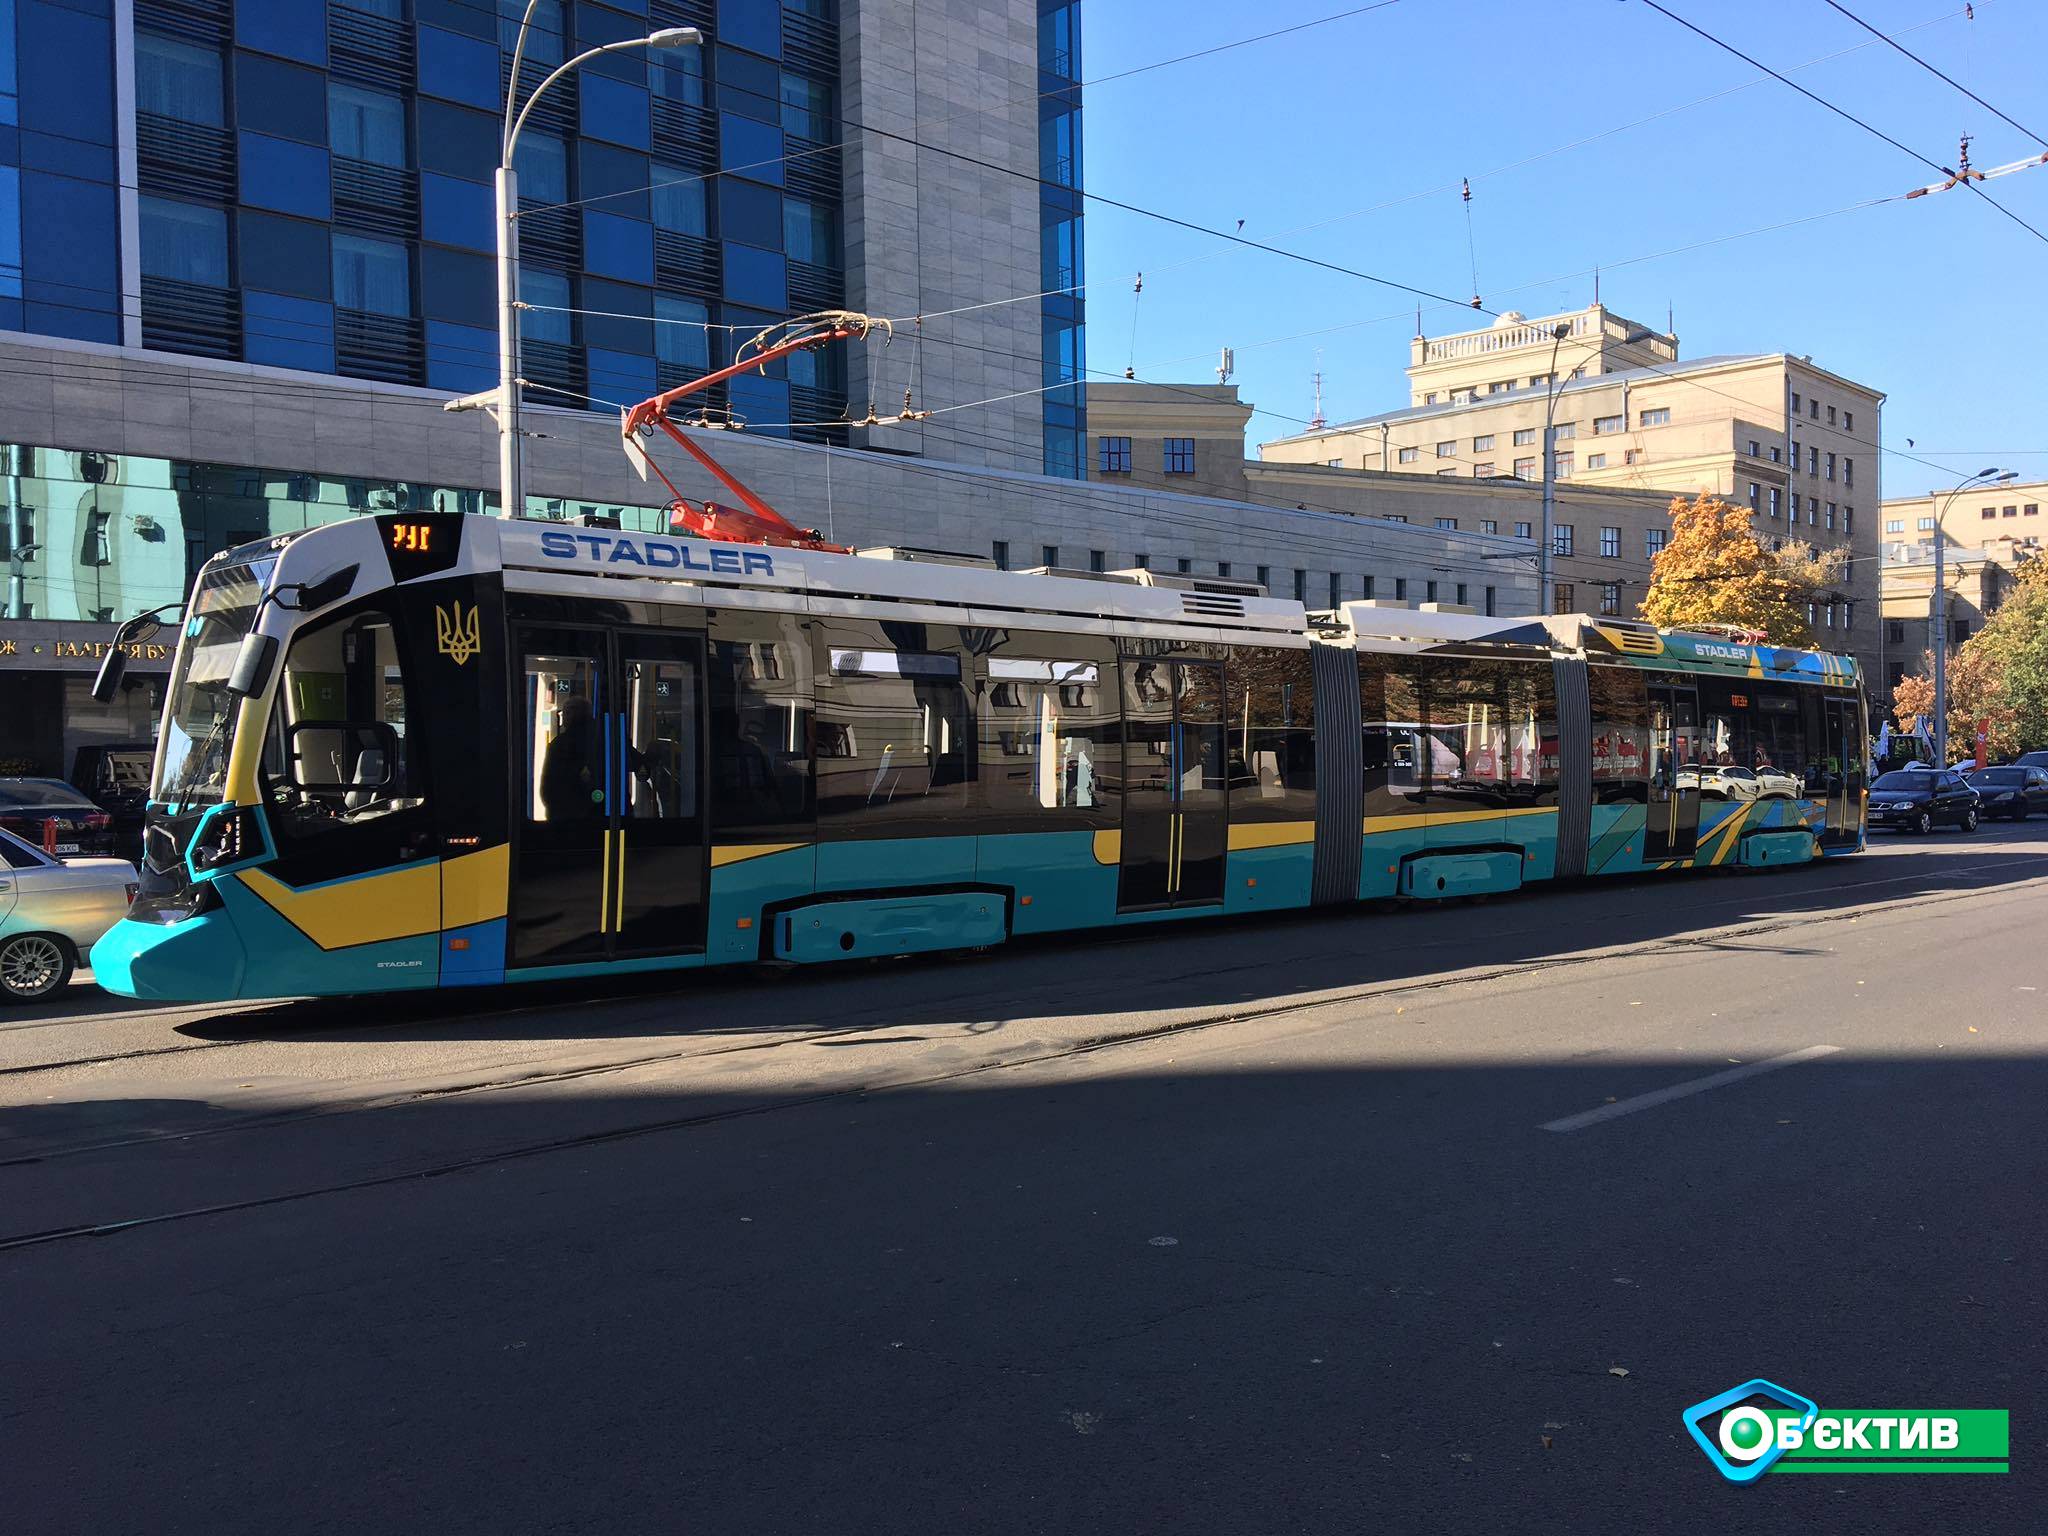 Швейцарский трамвай "Stadler" совершил презентационную поездку по центру Харькова